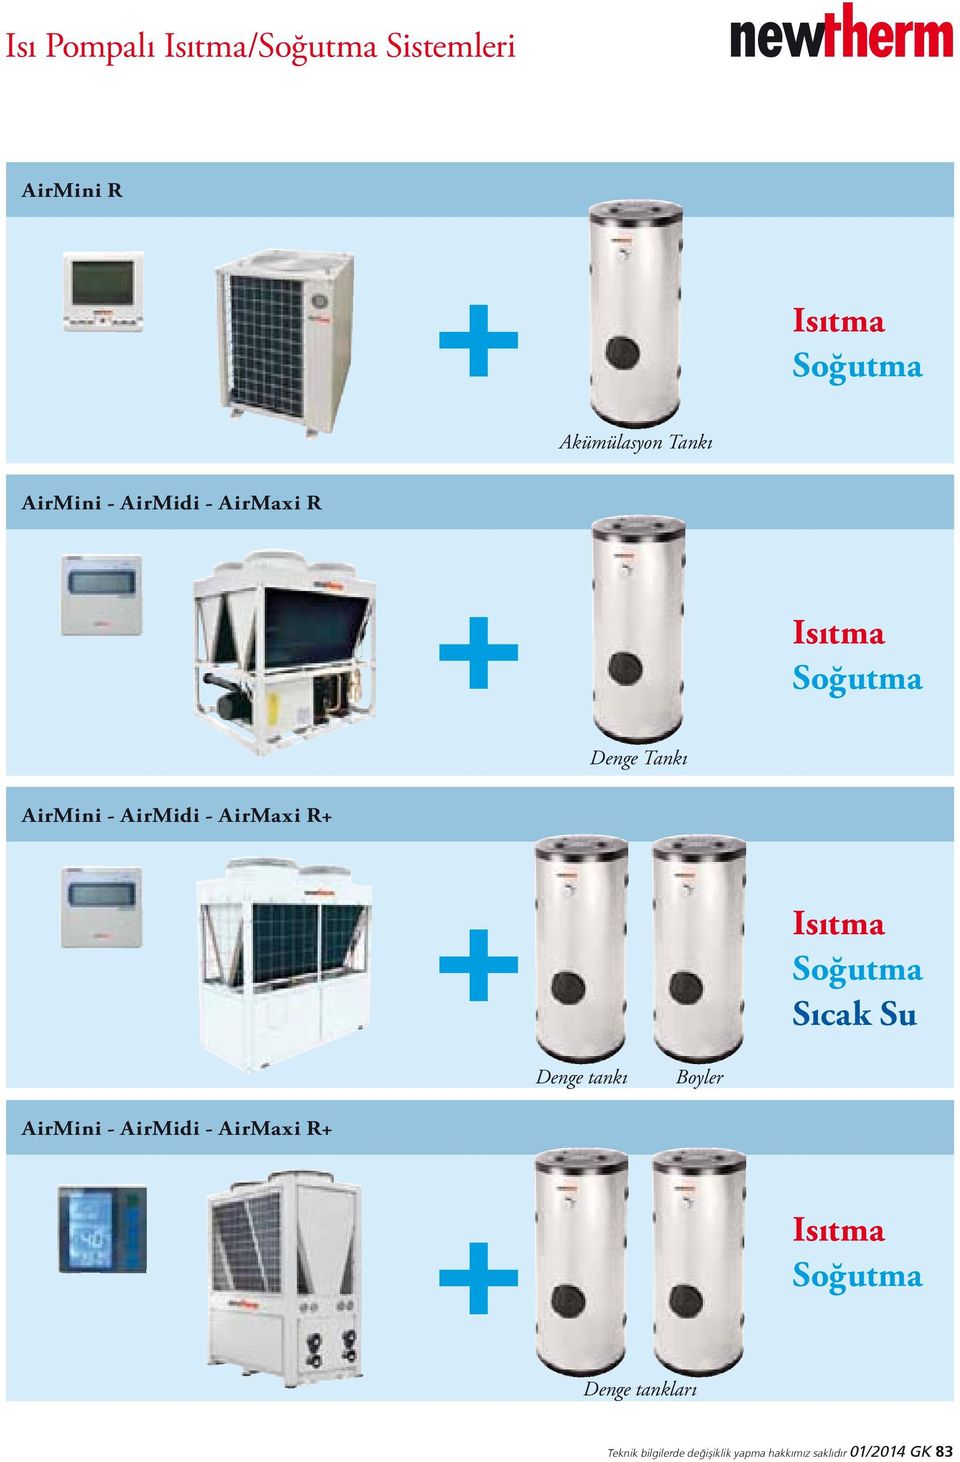 Sıcak Su Denge tankı Boyler AirMini - AirMidi - AirMaxi R+ Isıtma Soğutma